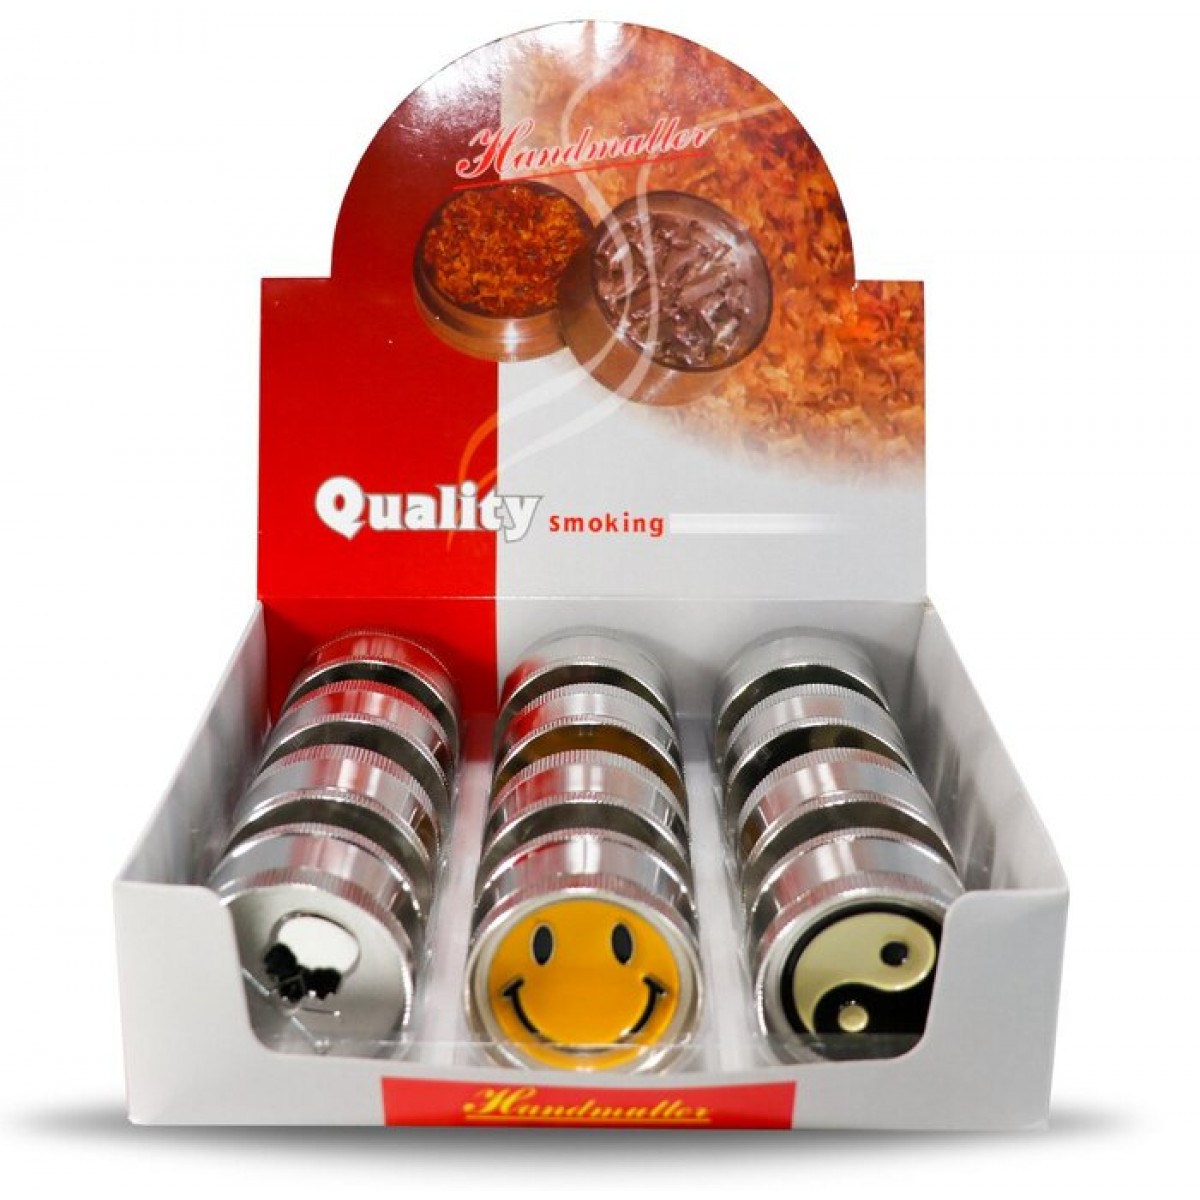 Quality Smoking Handmuller Grinder - 3 Parts - Case of 12